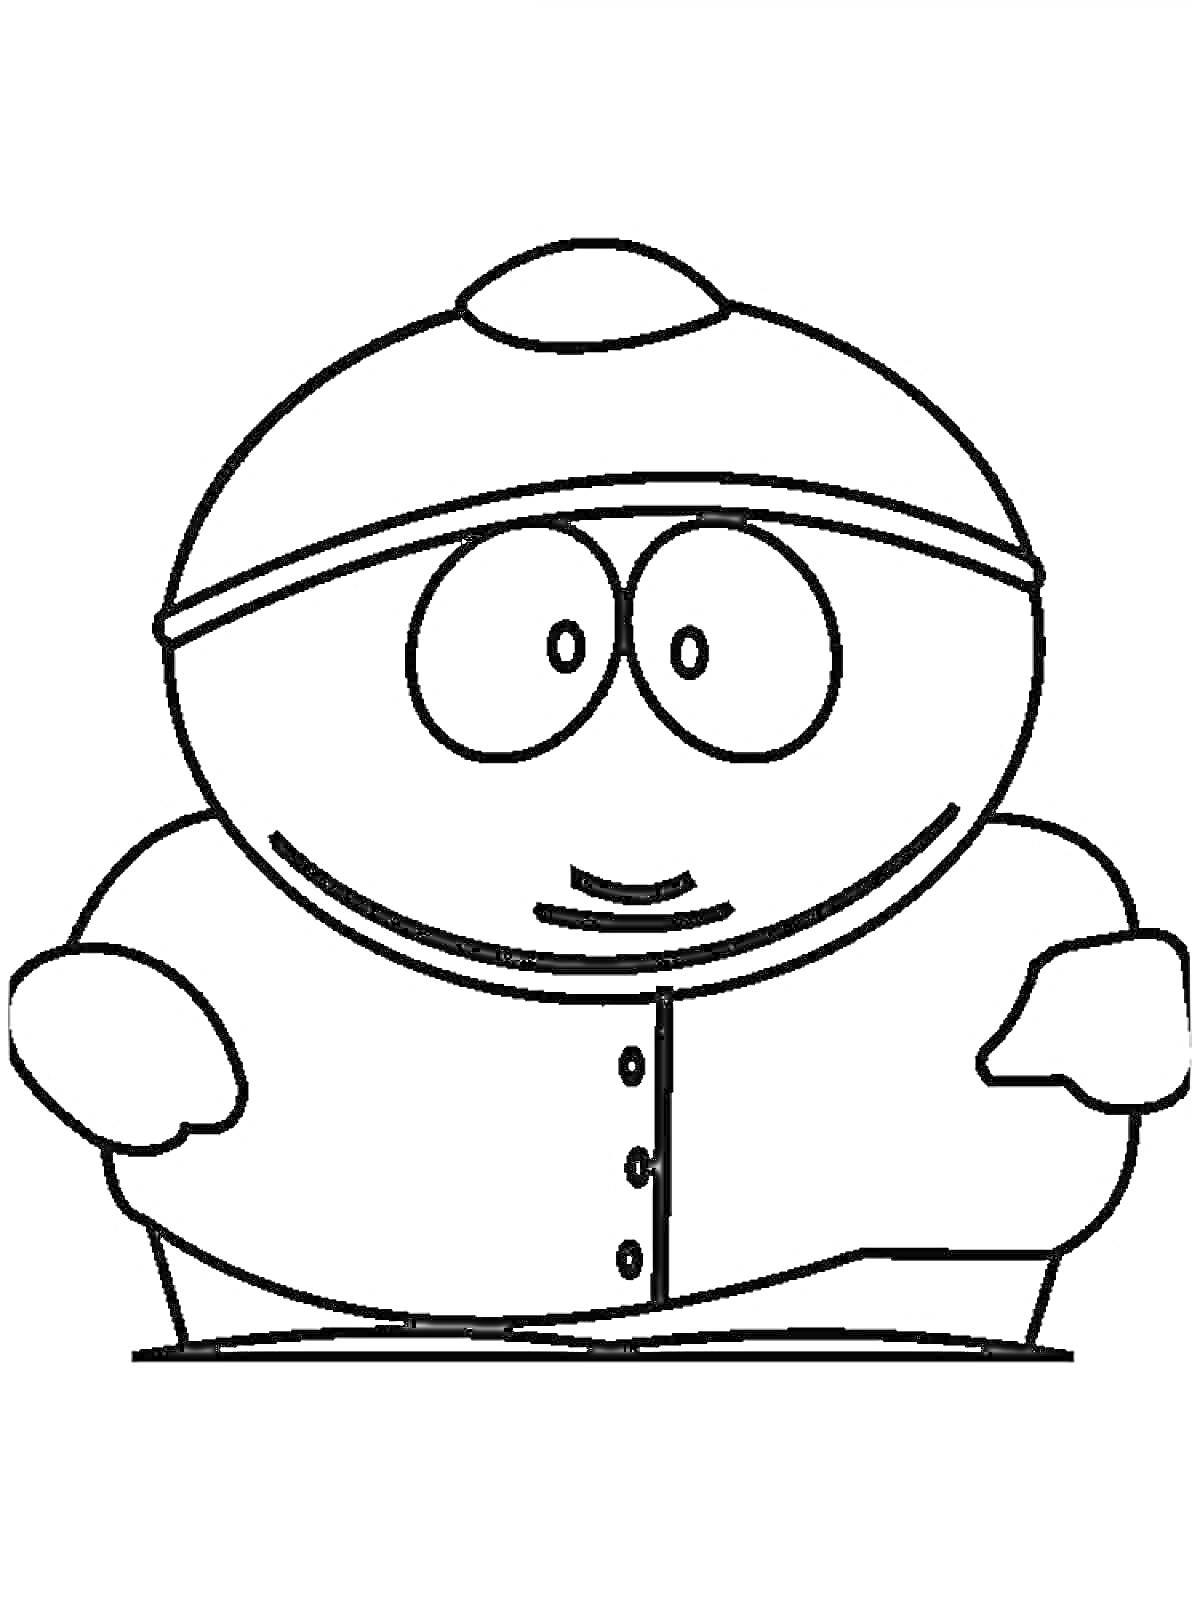 Раскраска Персонаж мультфильма в шапке и куртке с пуговицами из мультсериала 